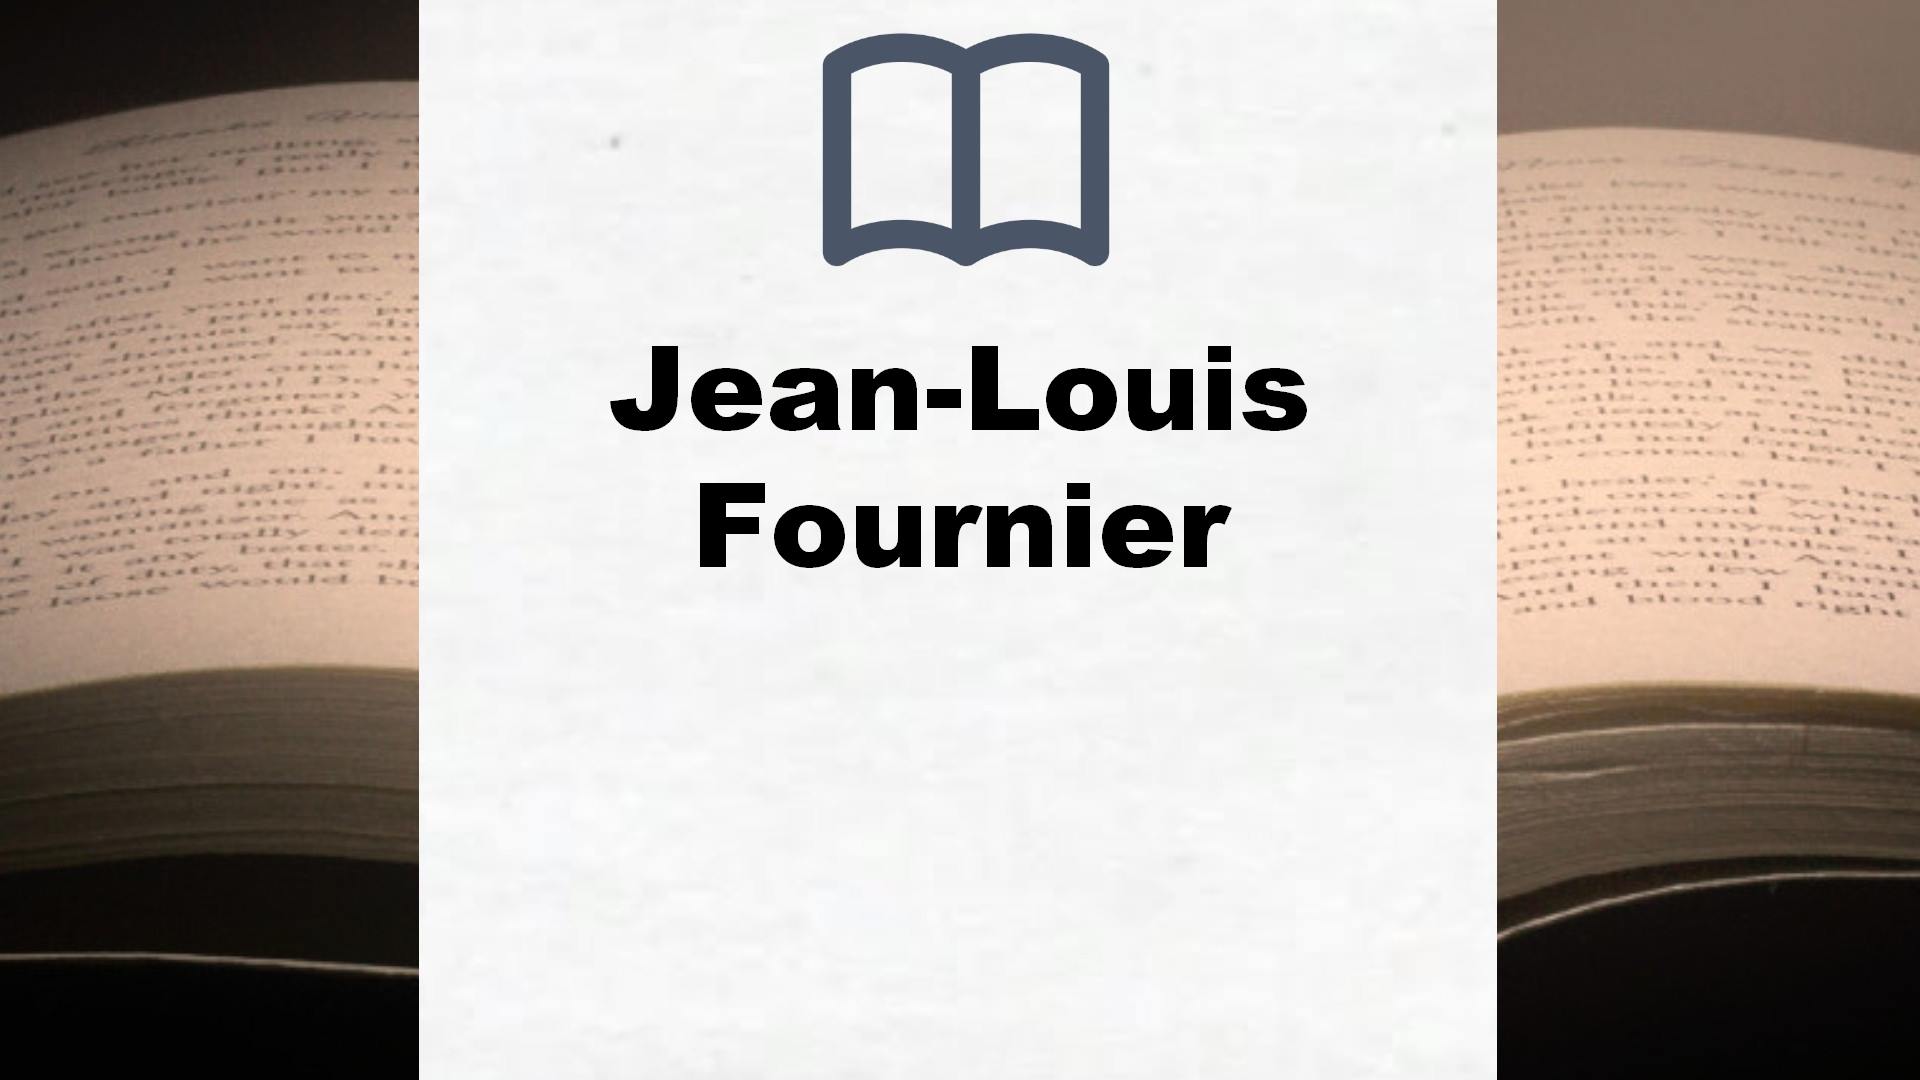 Libros Jean-Louis Fournier